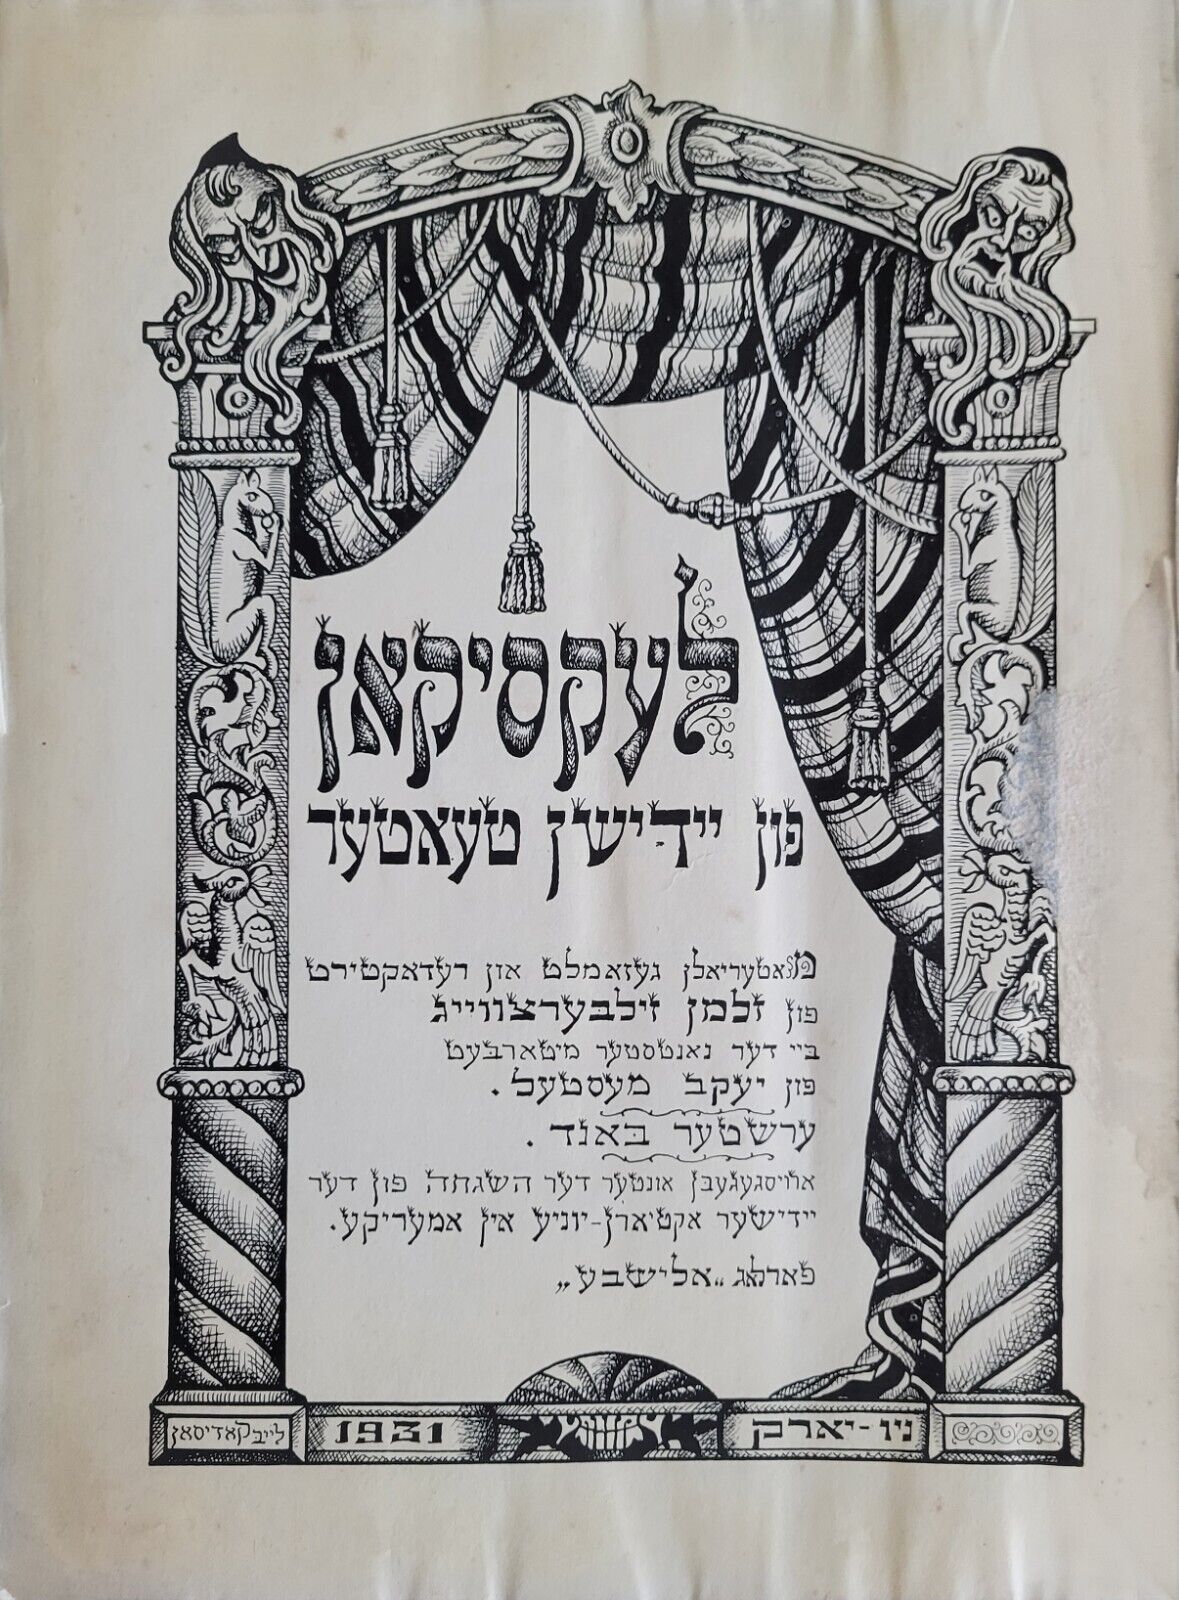 לעקסיקאן פון יידישן טעאטער Lexicon of Yiddish Theatre Zalmen Zylbercwaig 1931